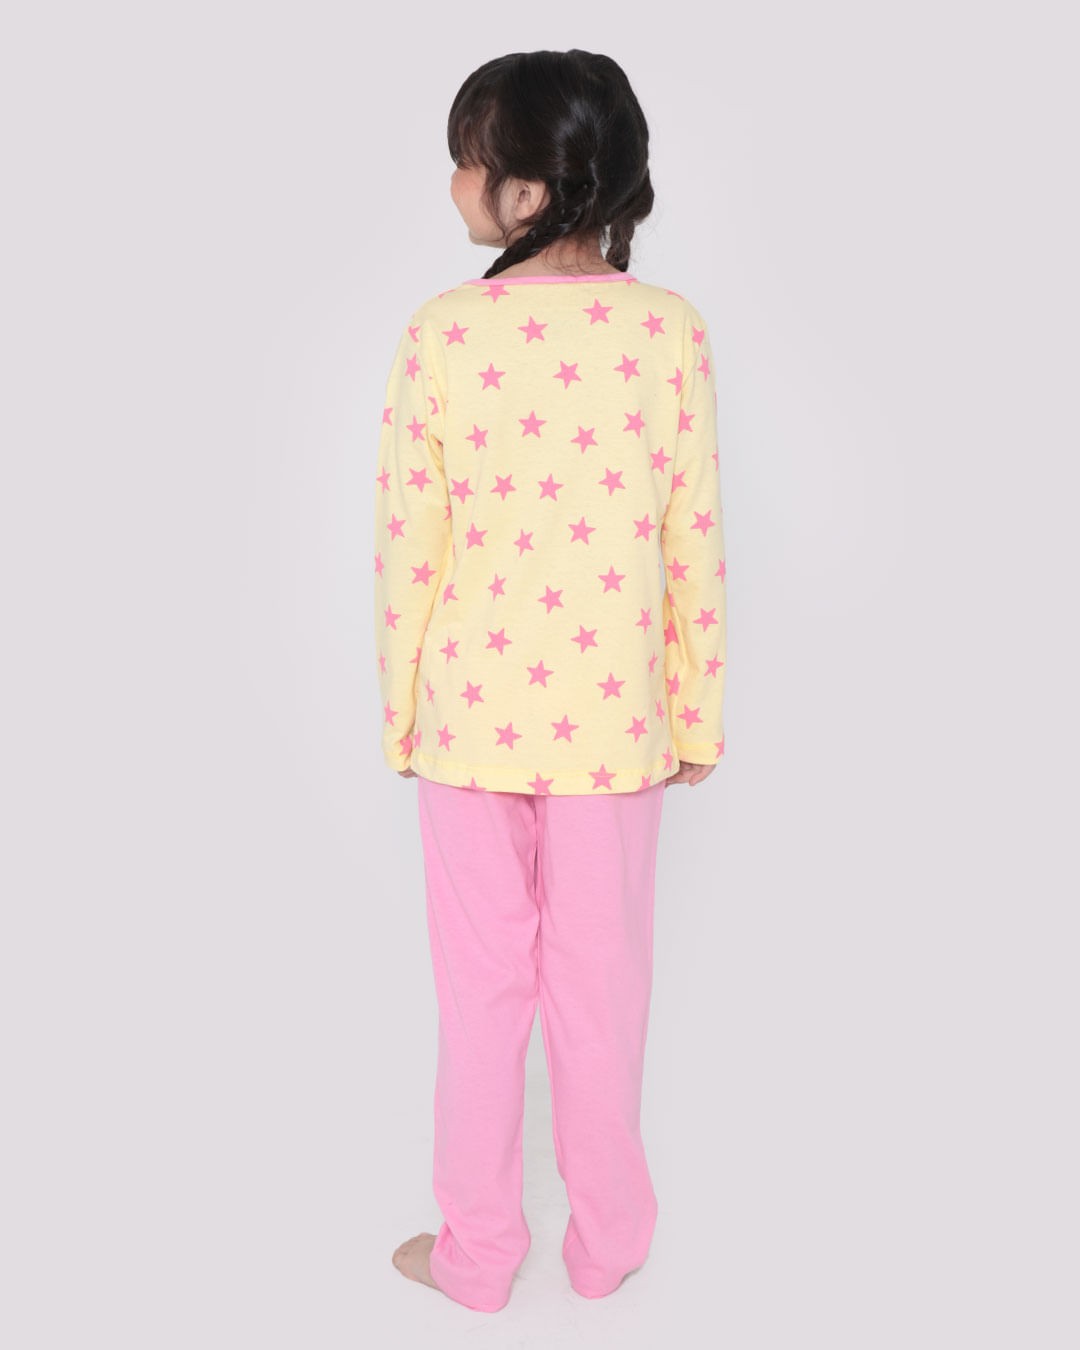 Pijama-Infantil-Estampa-Cuteness-Amarelo